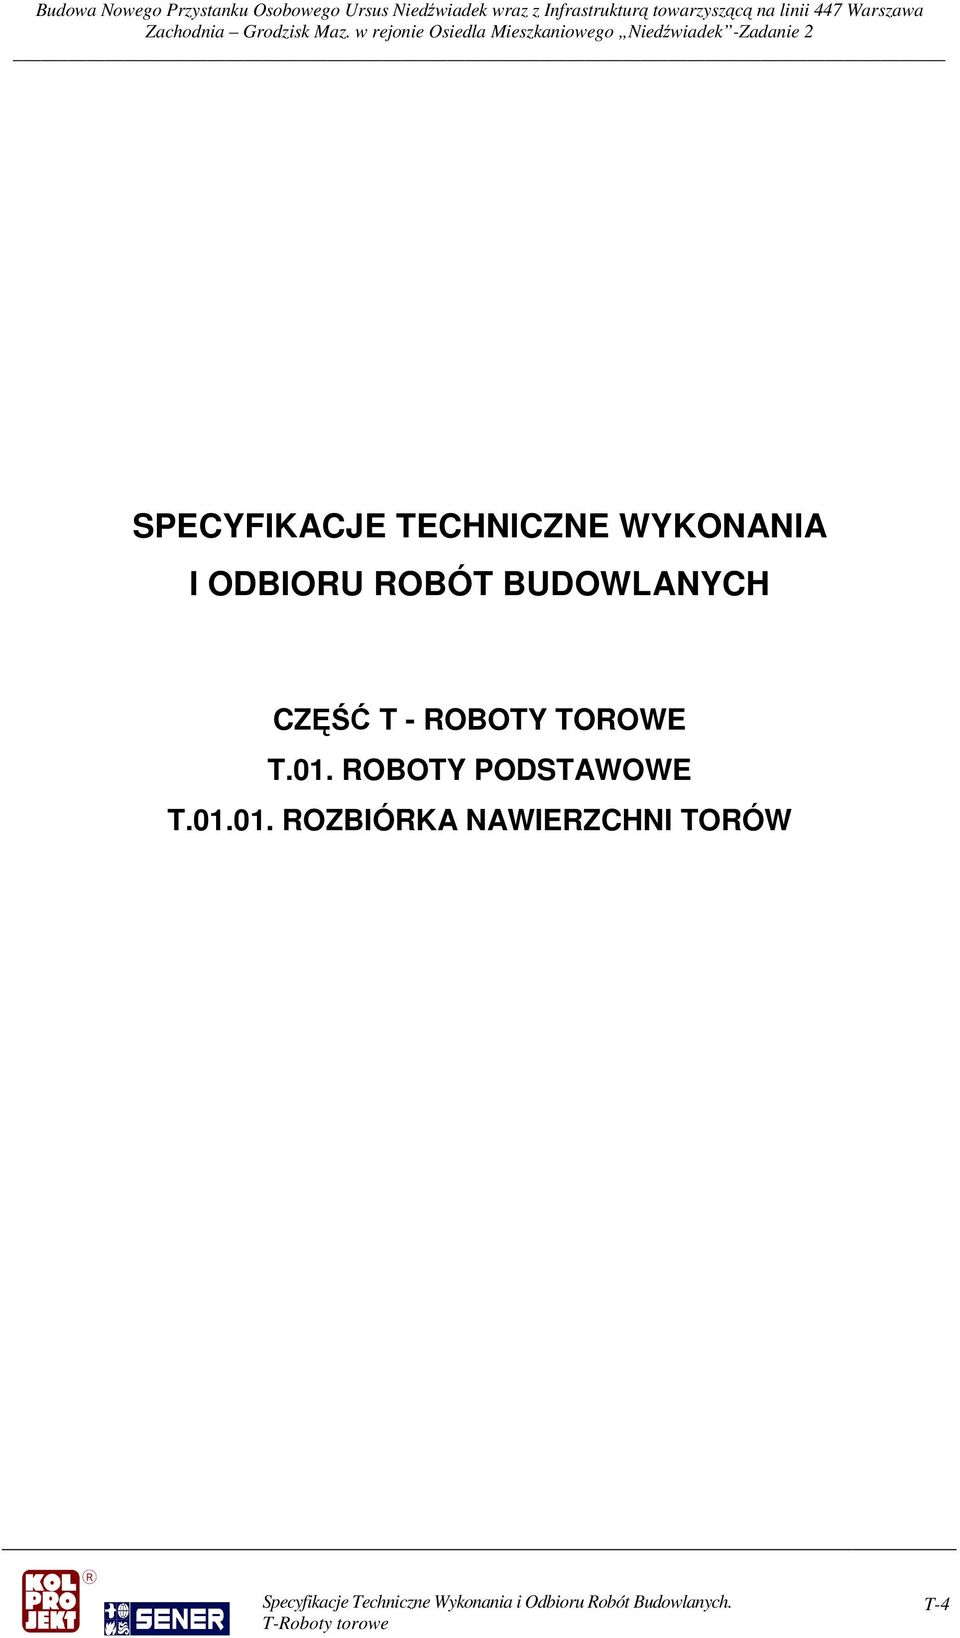 ROBOTY TOROWE T.01.